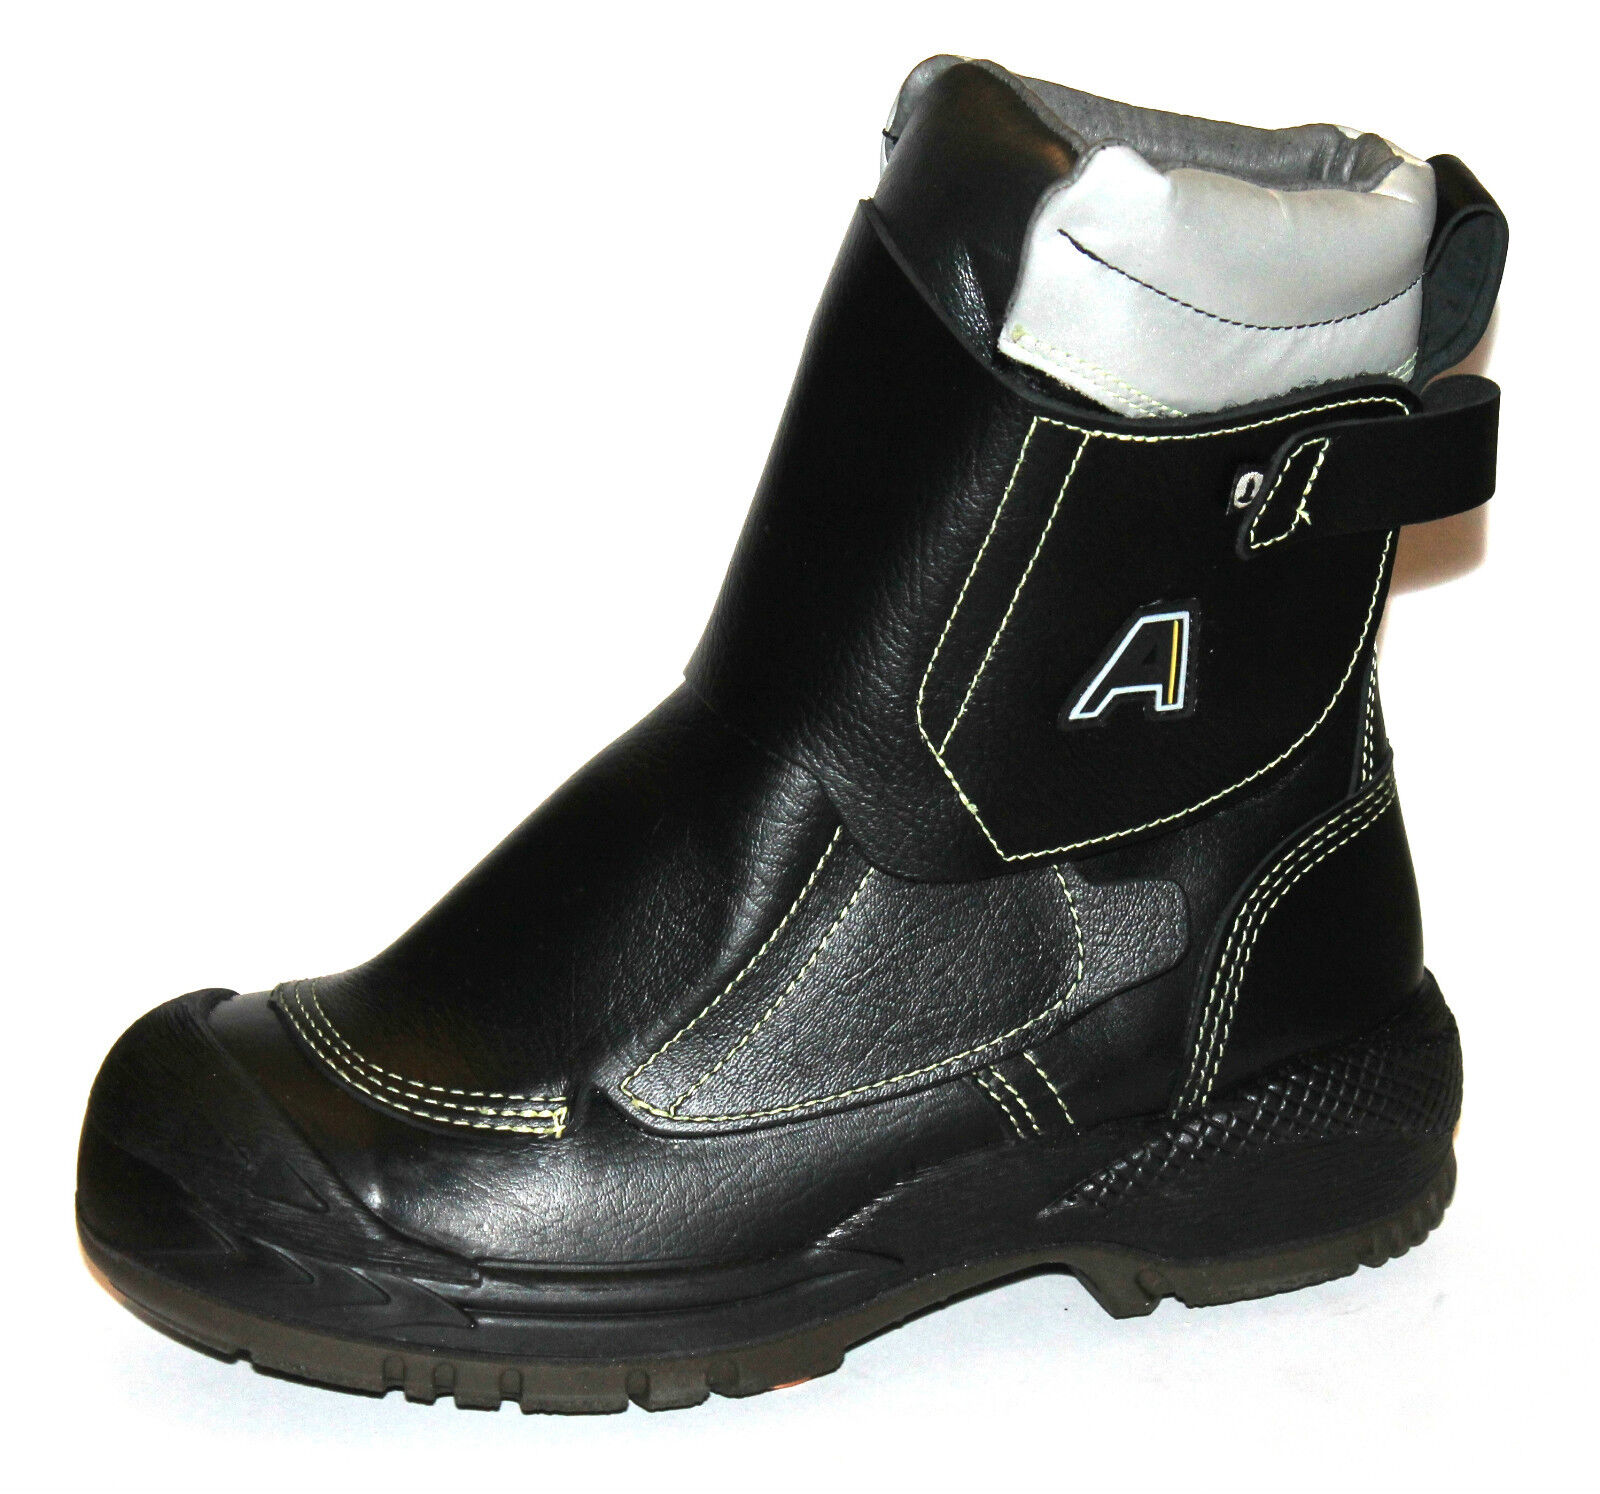 Details zu  Arbesko 653 Mens Gents UK 7.5 Black Leather Steel Toe Cap Safety Tall Work Boots Auf Lager